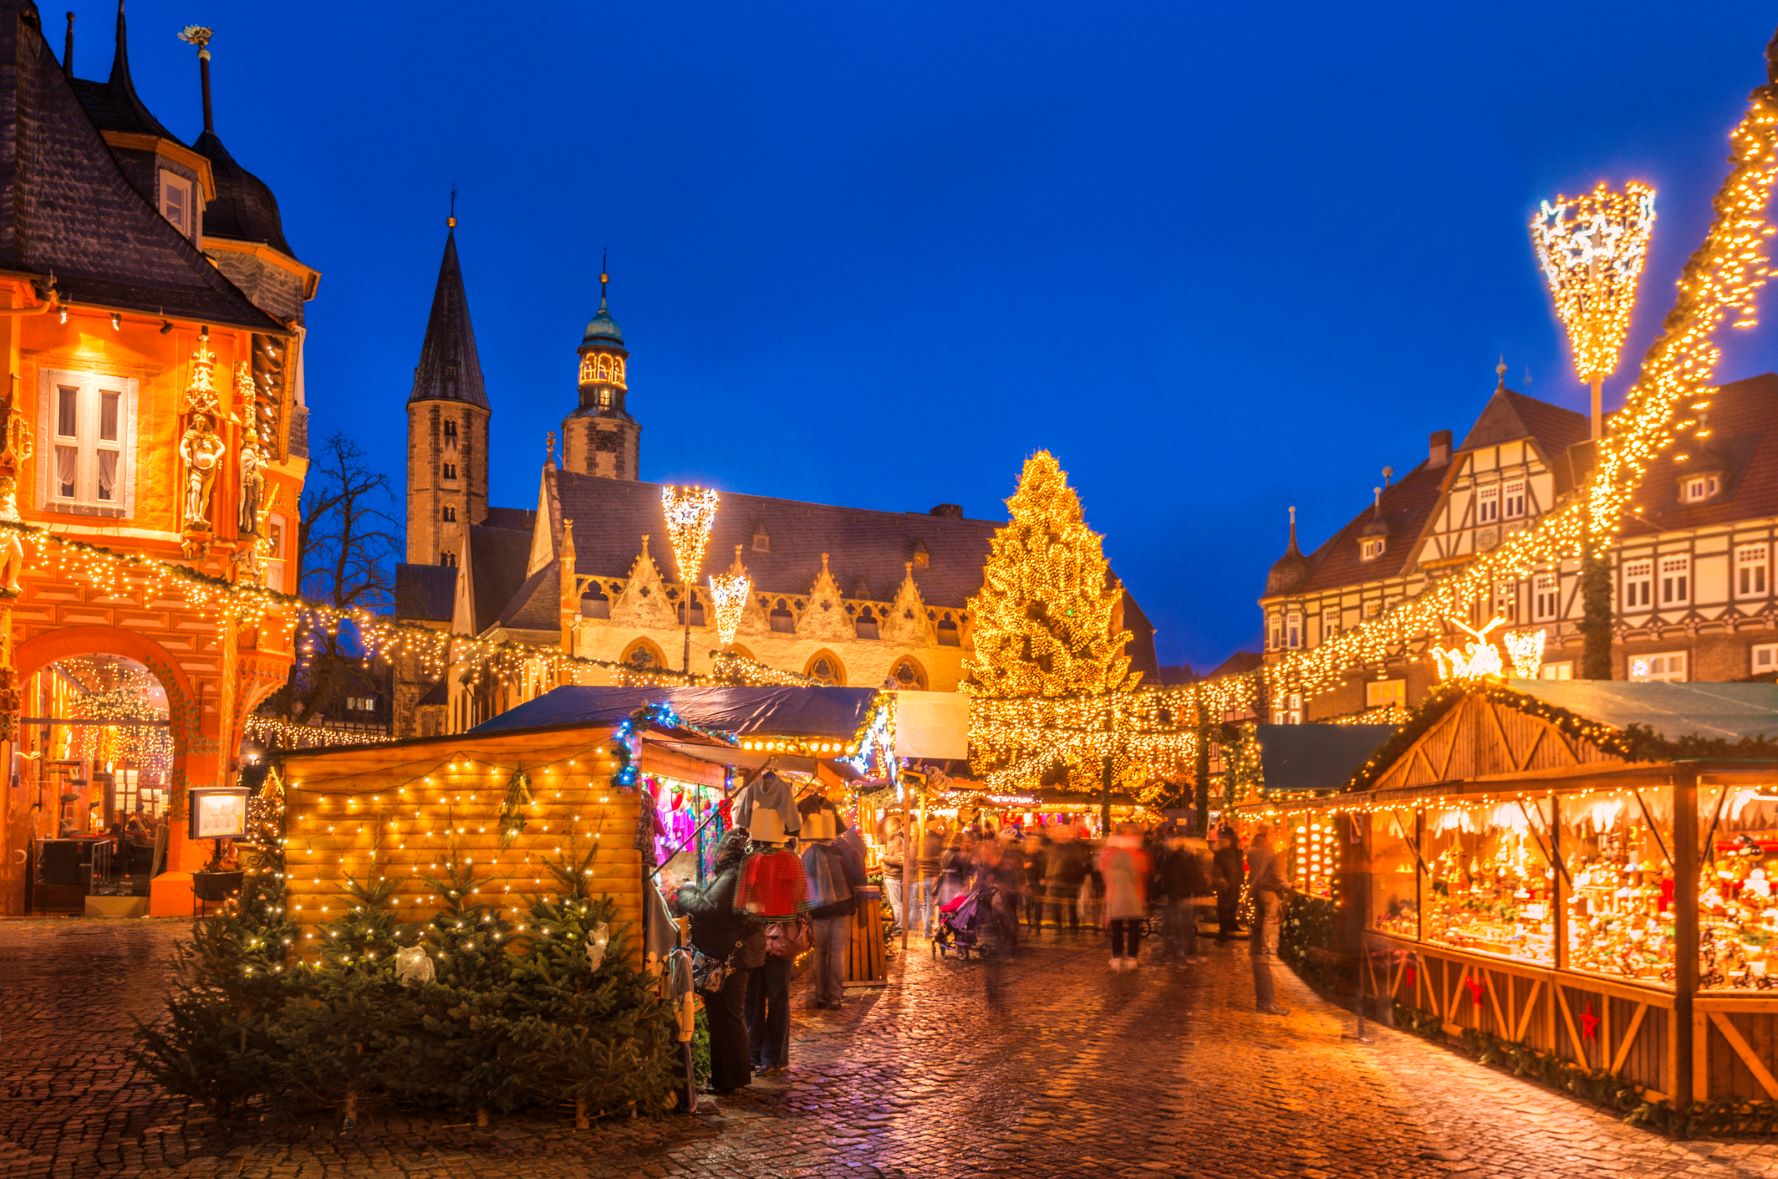 Städte und Schausteller warten auf den WeihnachtsmarktPlan Rundblick